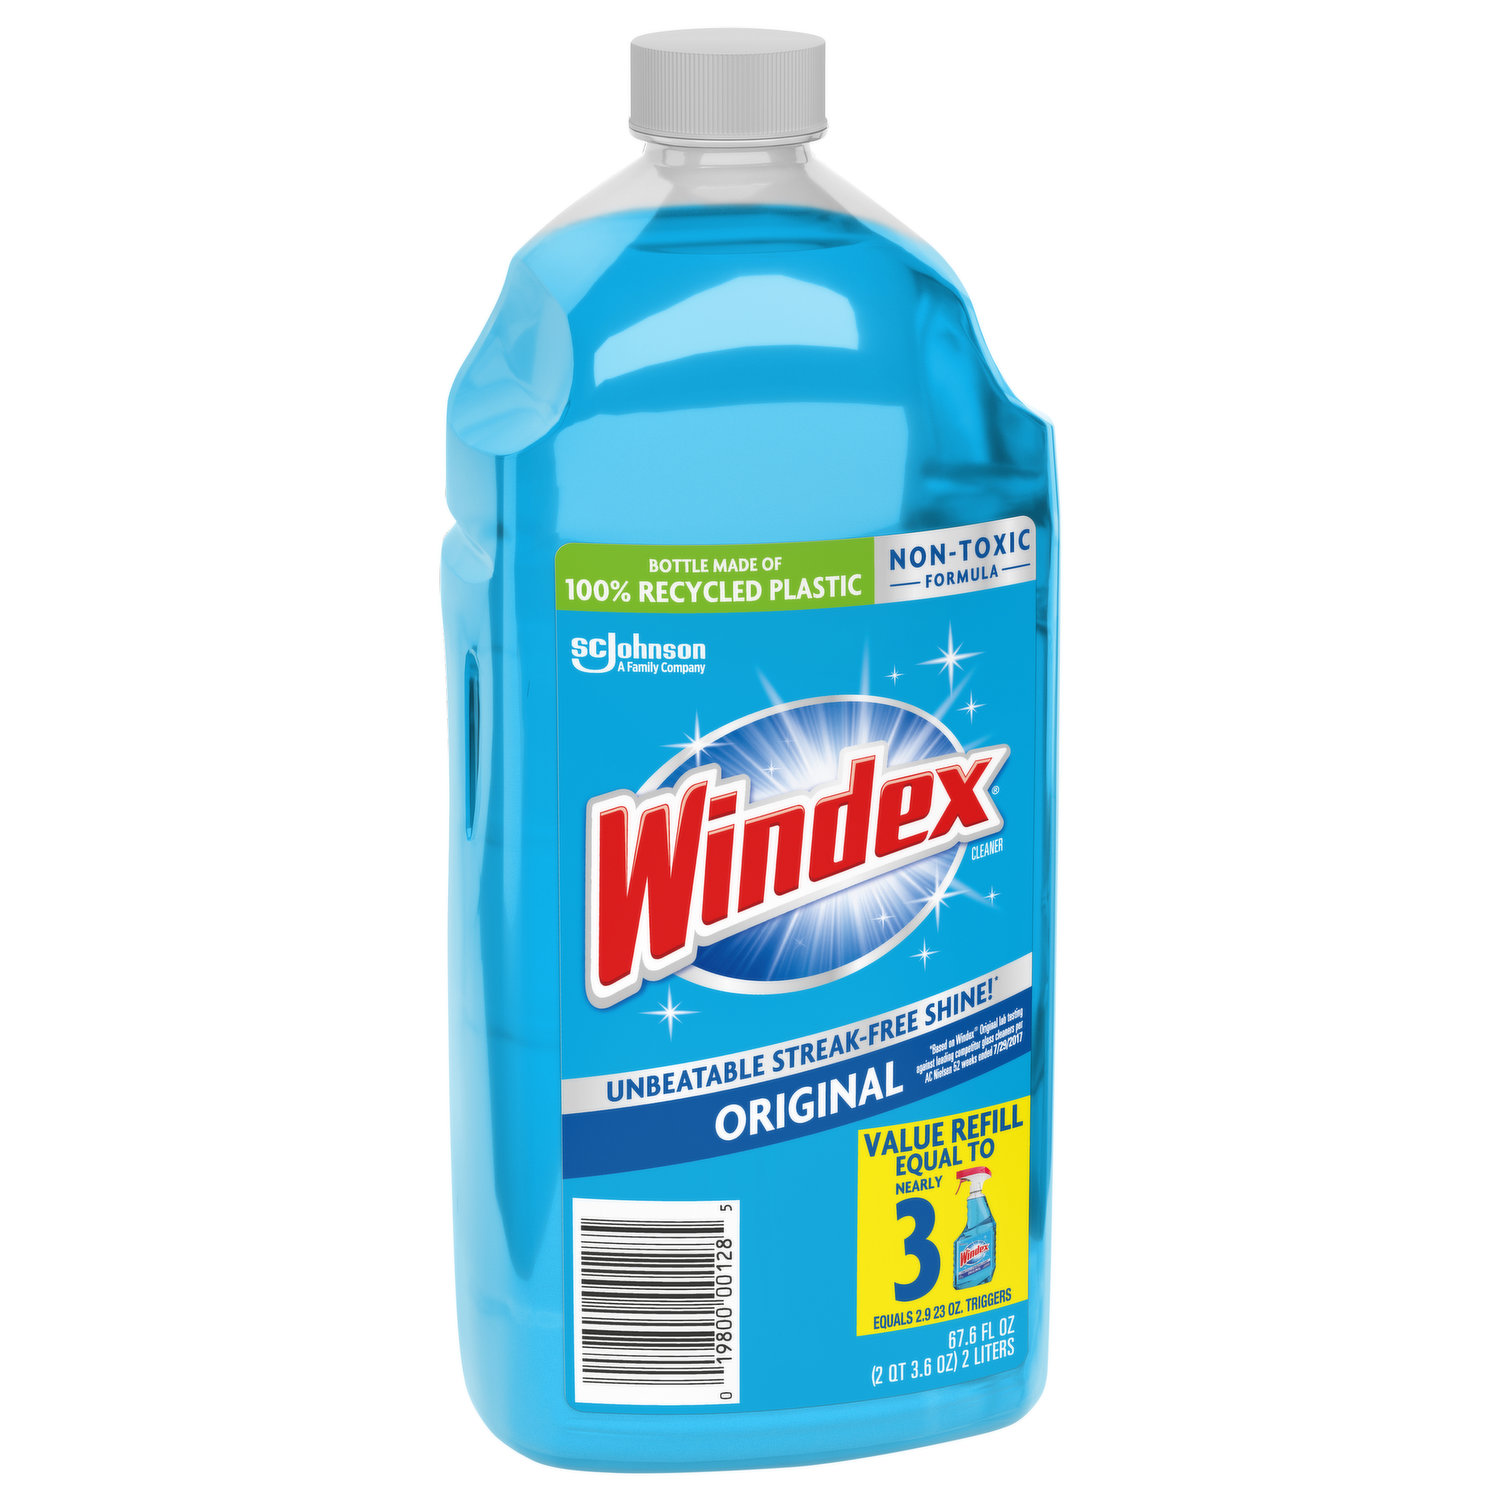 Windex Original Glass Cleaner Spray Bottle, 23 oz